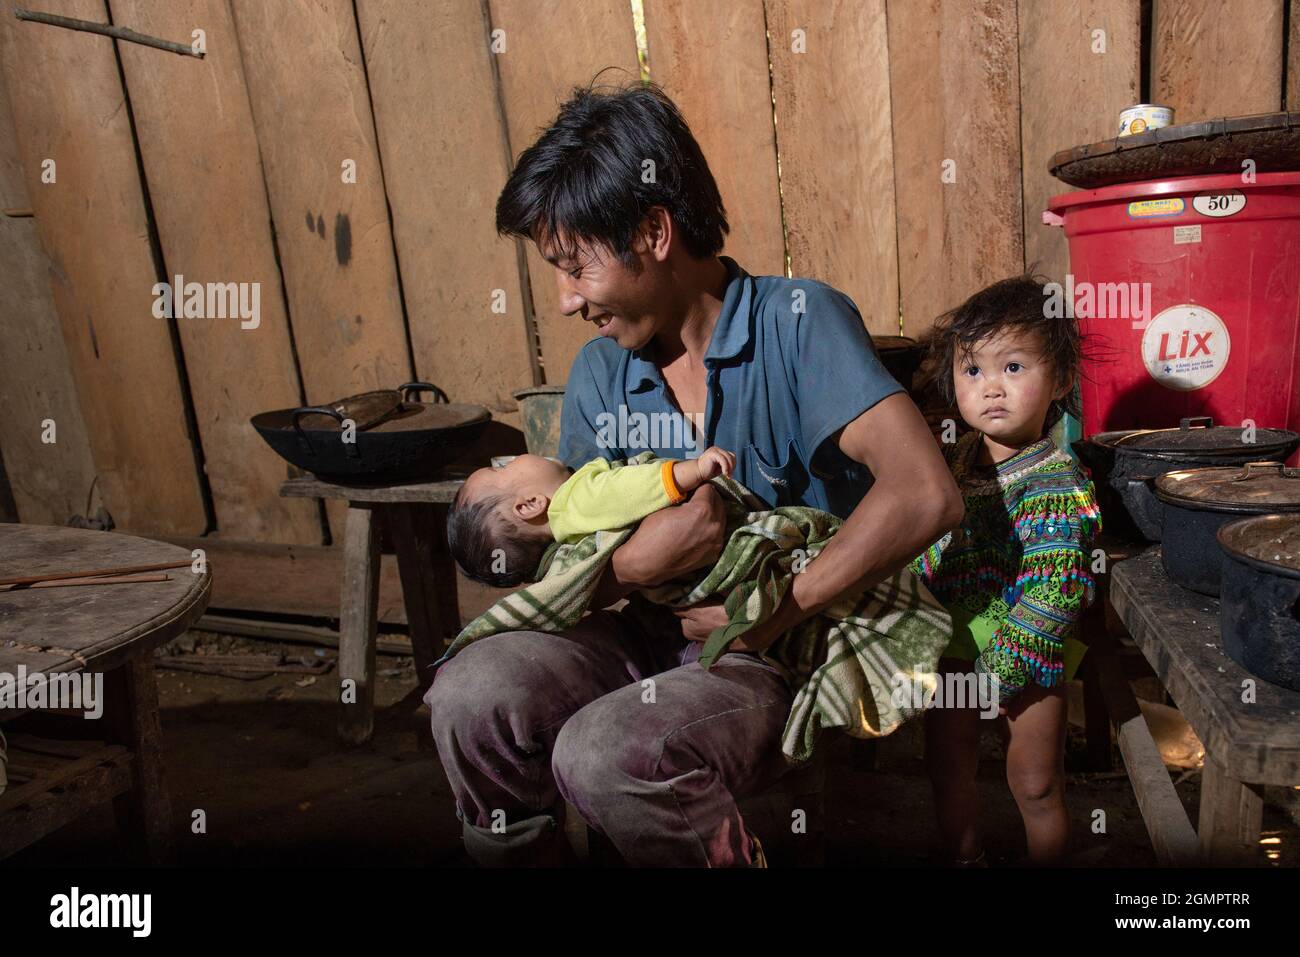 Sapa, Vietnam - 14. April 2016: Vietnamesischer Vater mit Kindern zu Hause, während seine Frau arbeitet. Vaterschaft in Asien, ländliche arme Gegend. Stockfoto